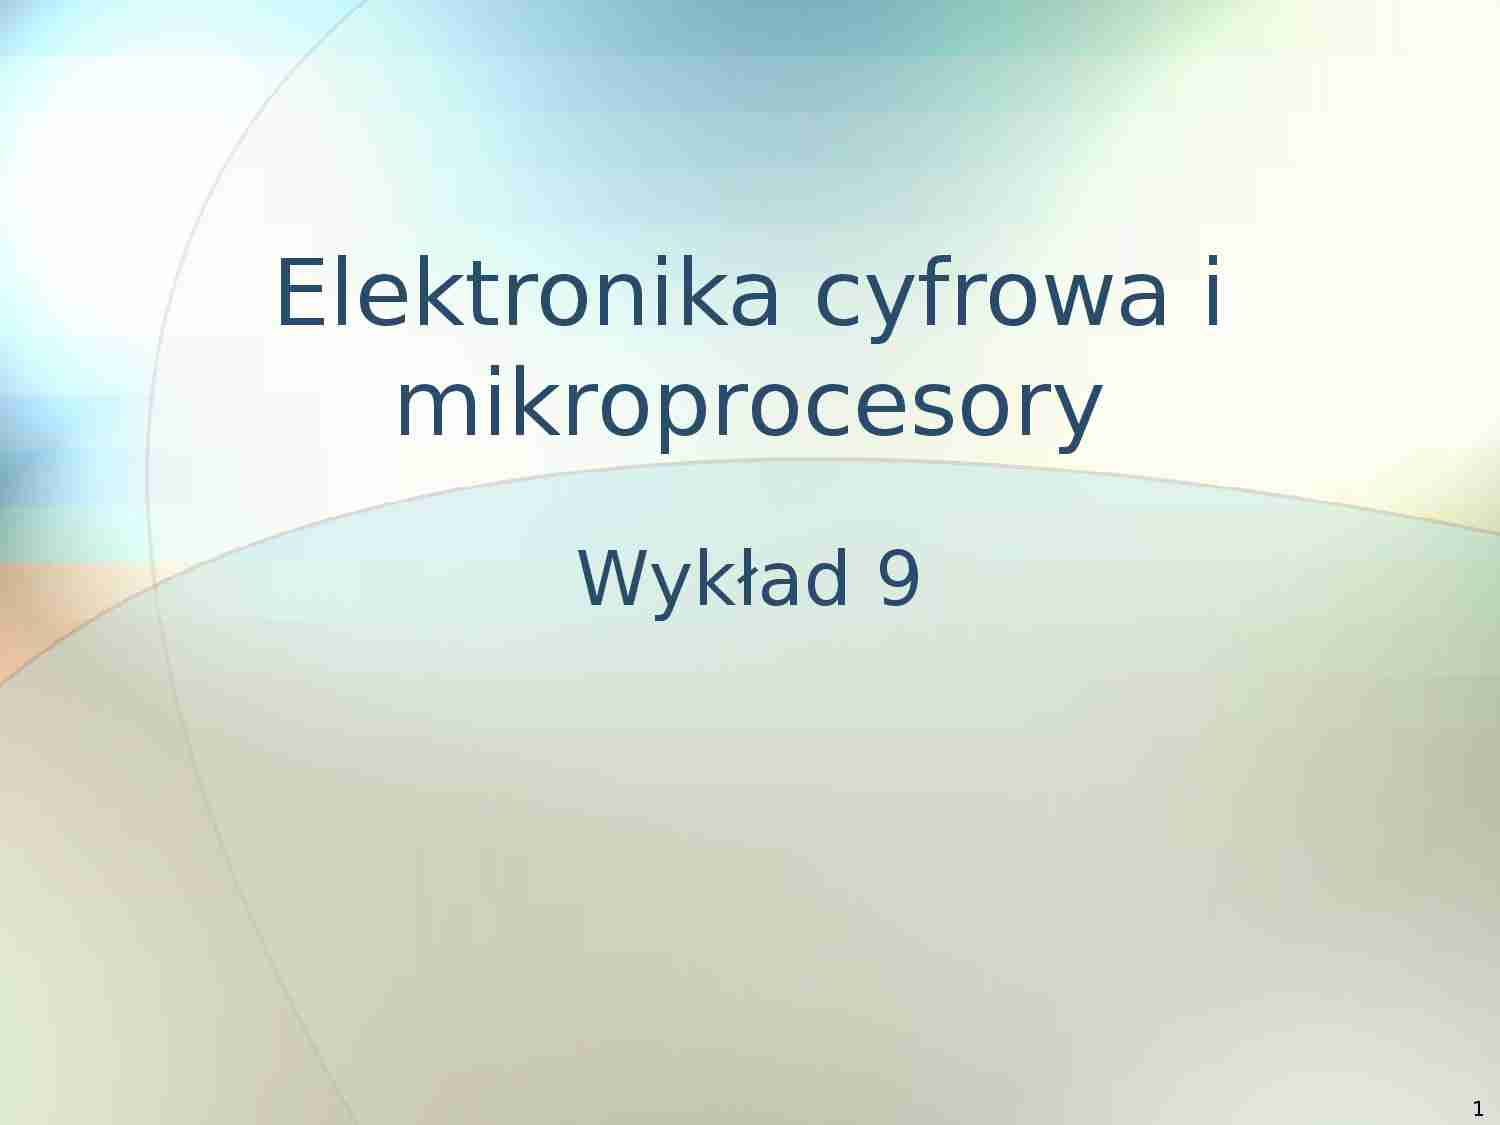 Elektronika cyfrowa i mikroprocesory - prezentacja - strona 1